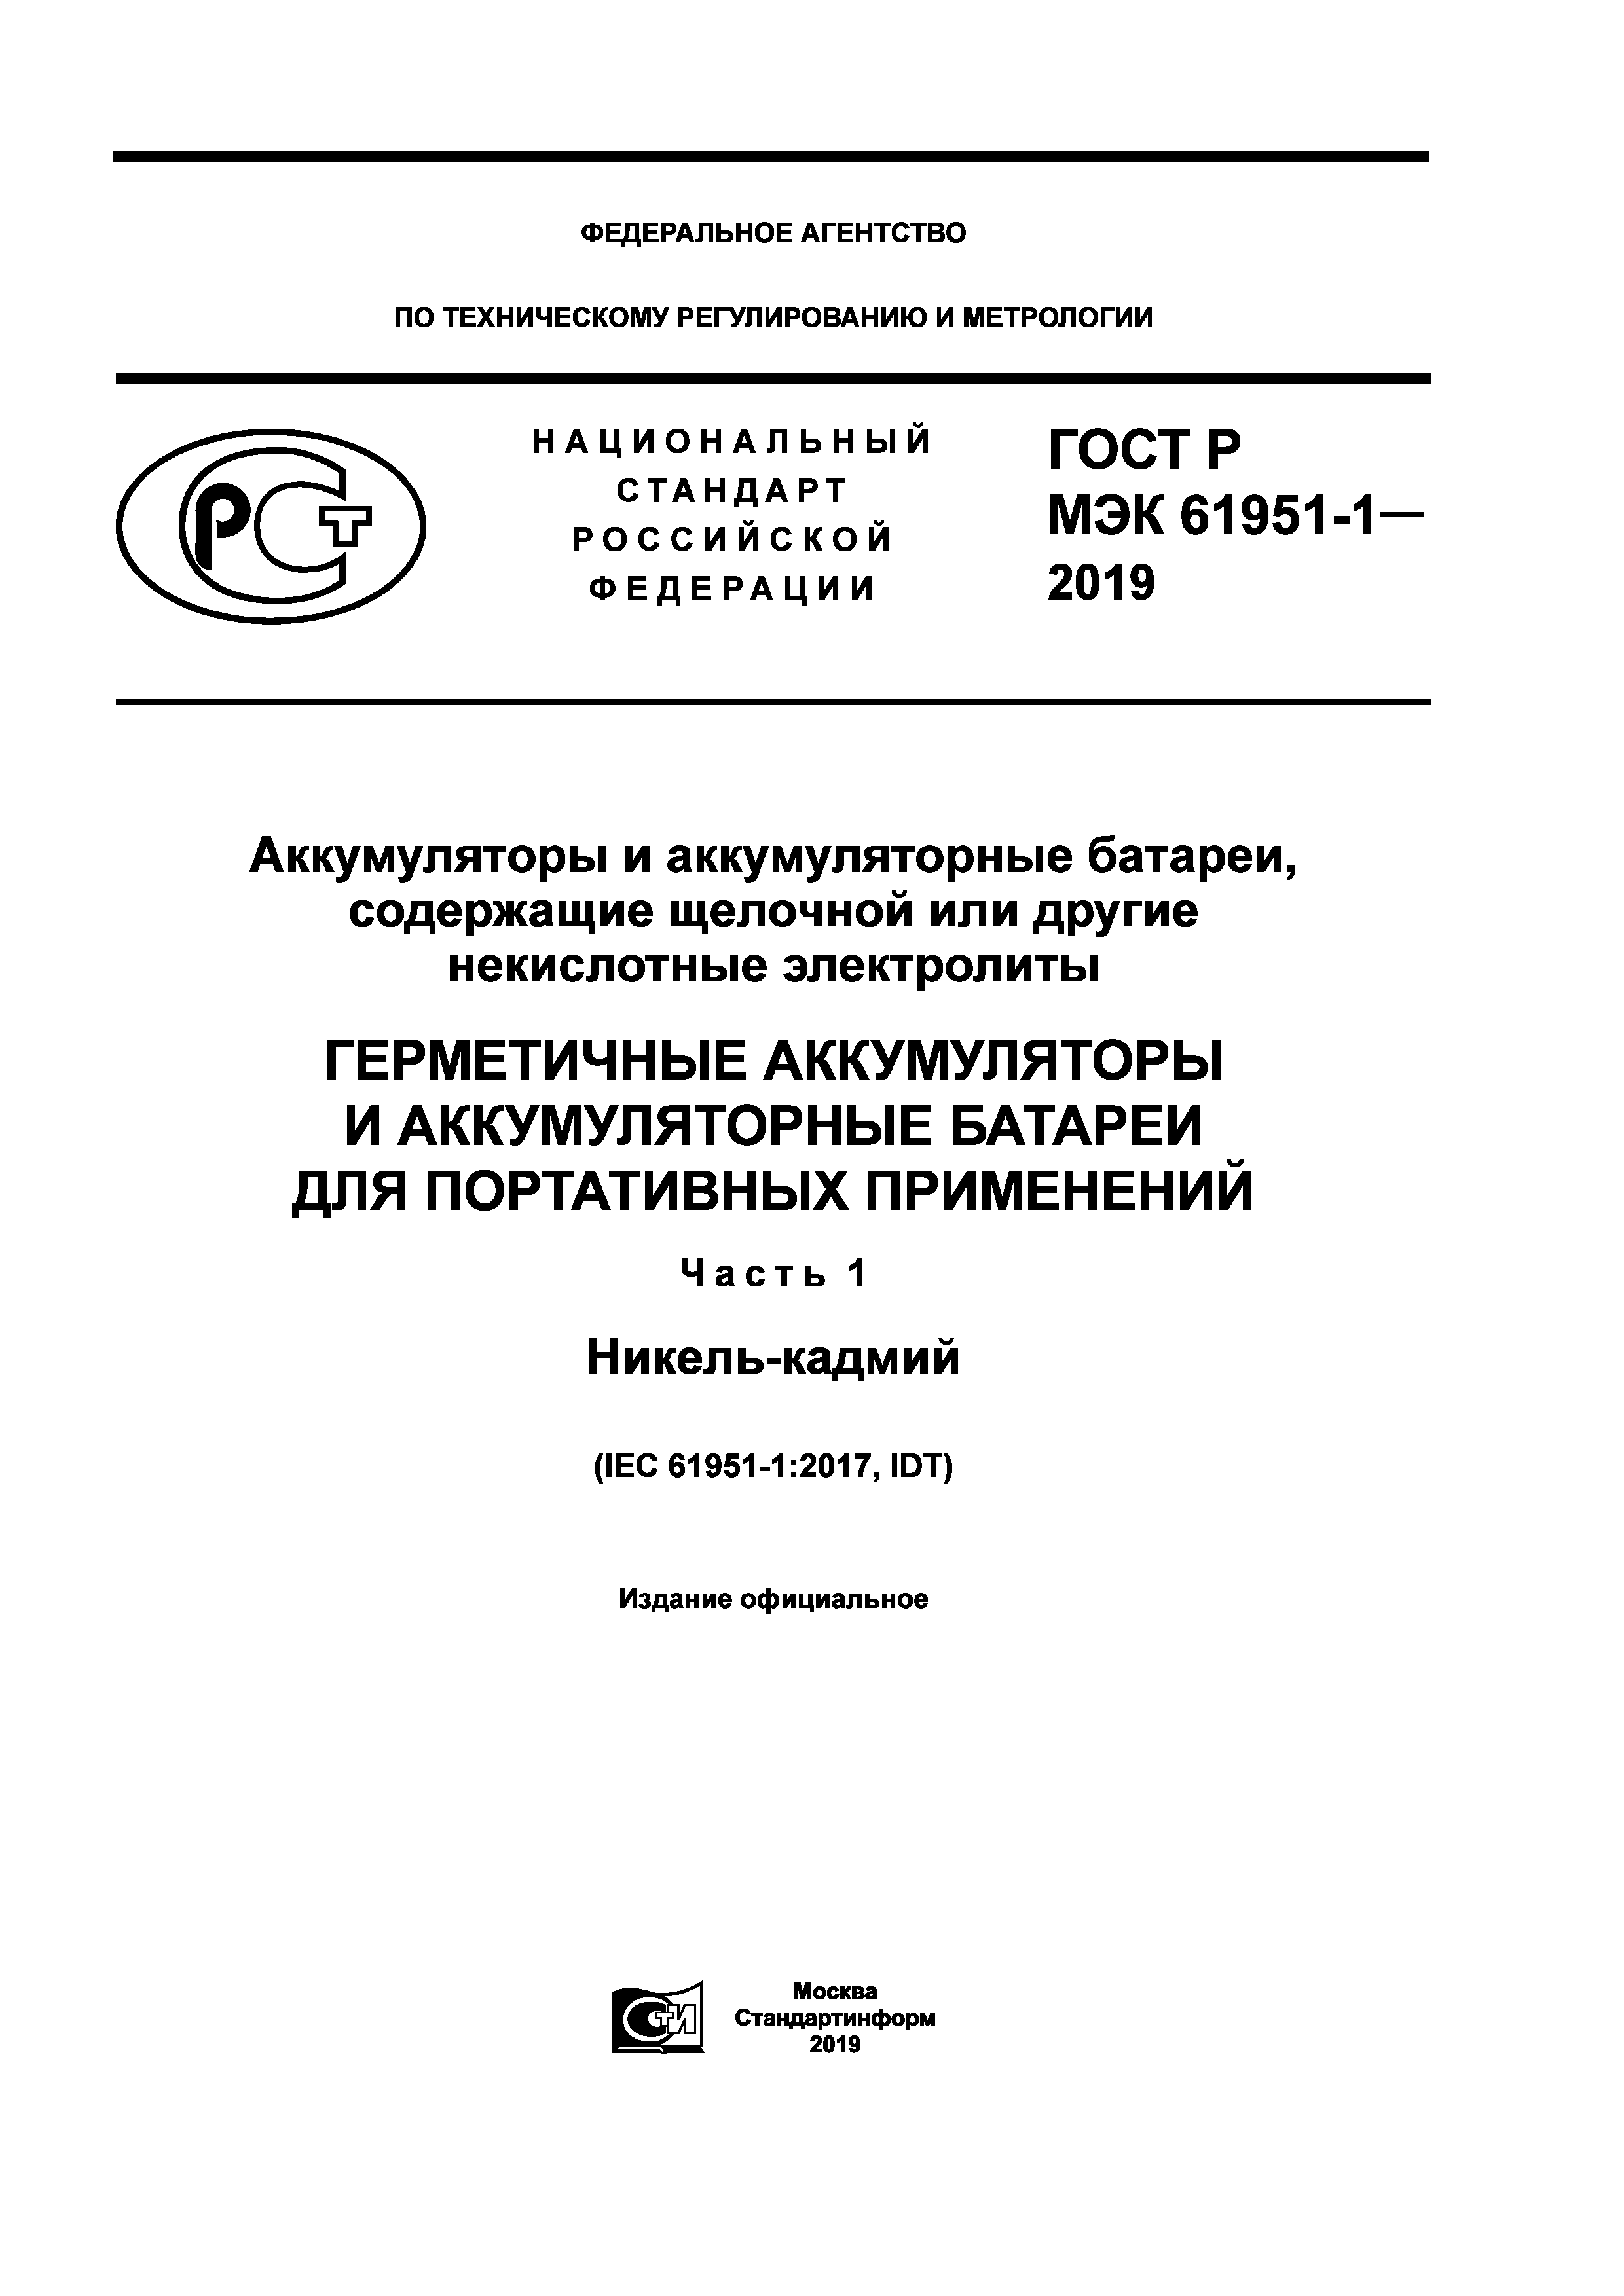 ГОСТ Р МЭК 61951-1-2019